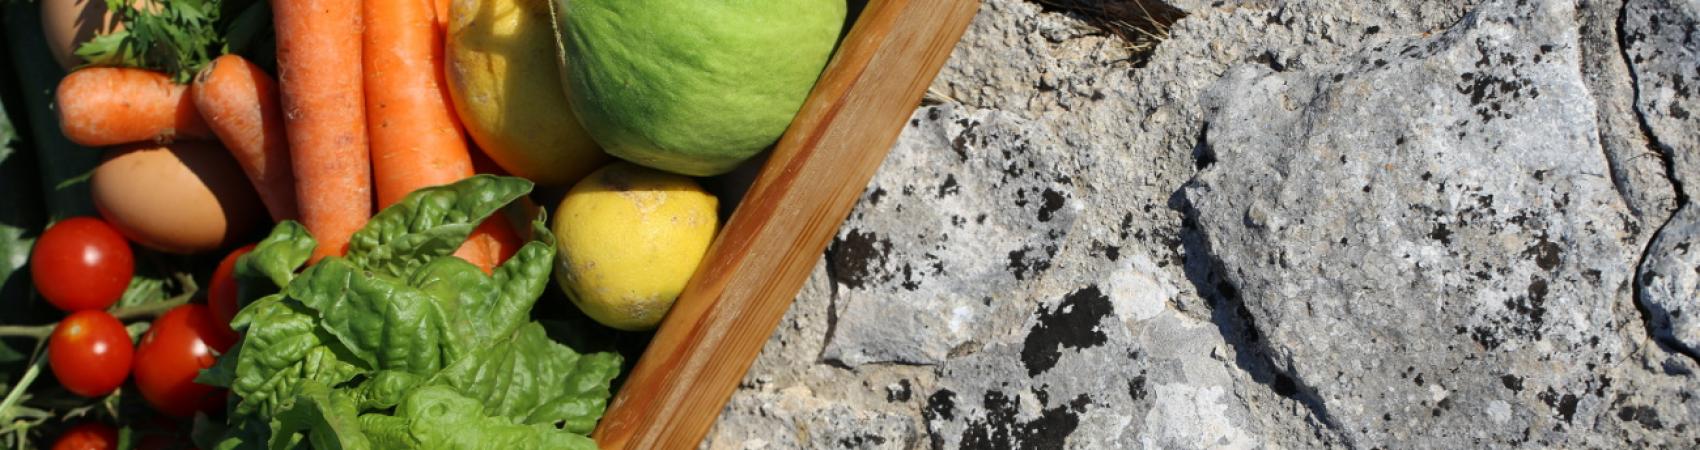 Frutta e verdura a chilometro zero da Trulli Panoramici in Puglia